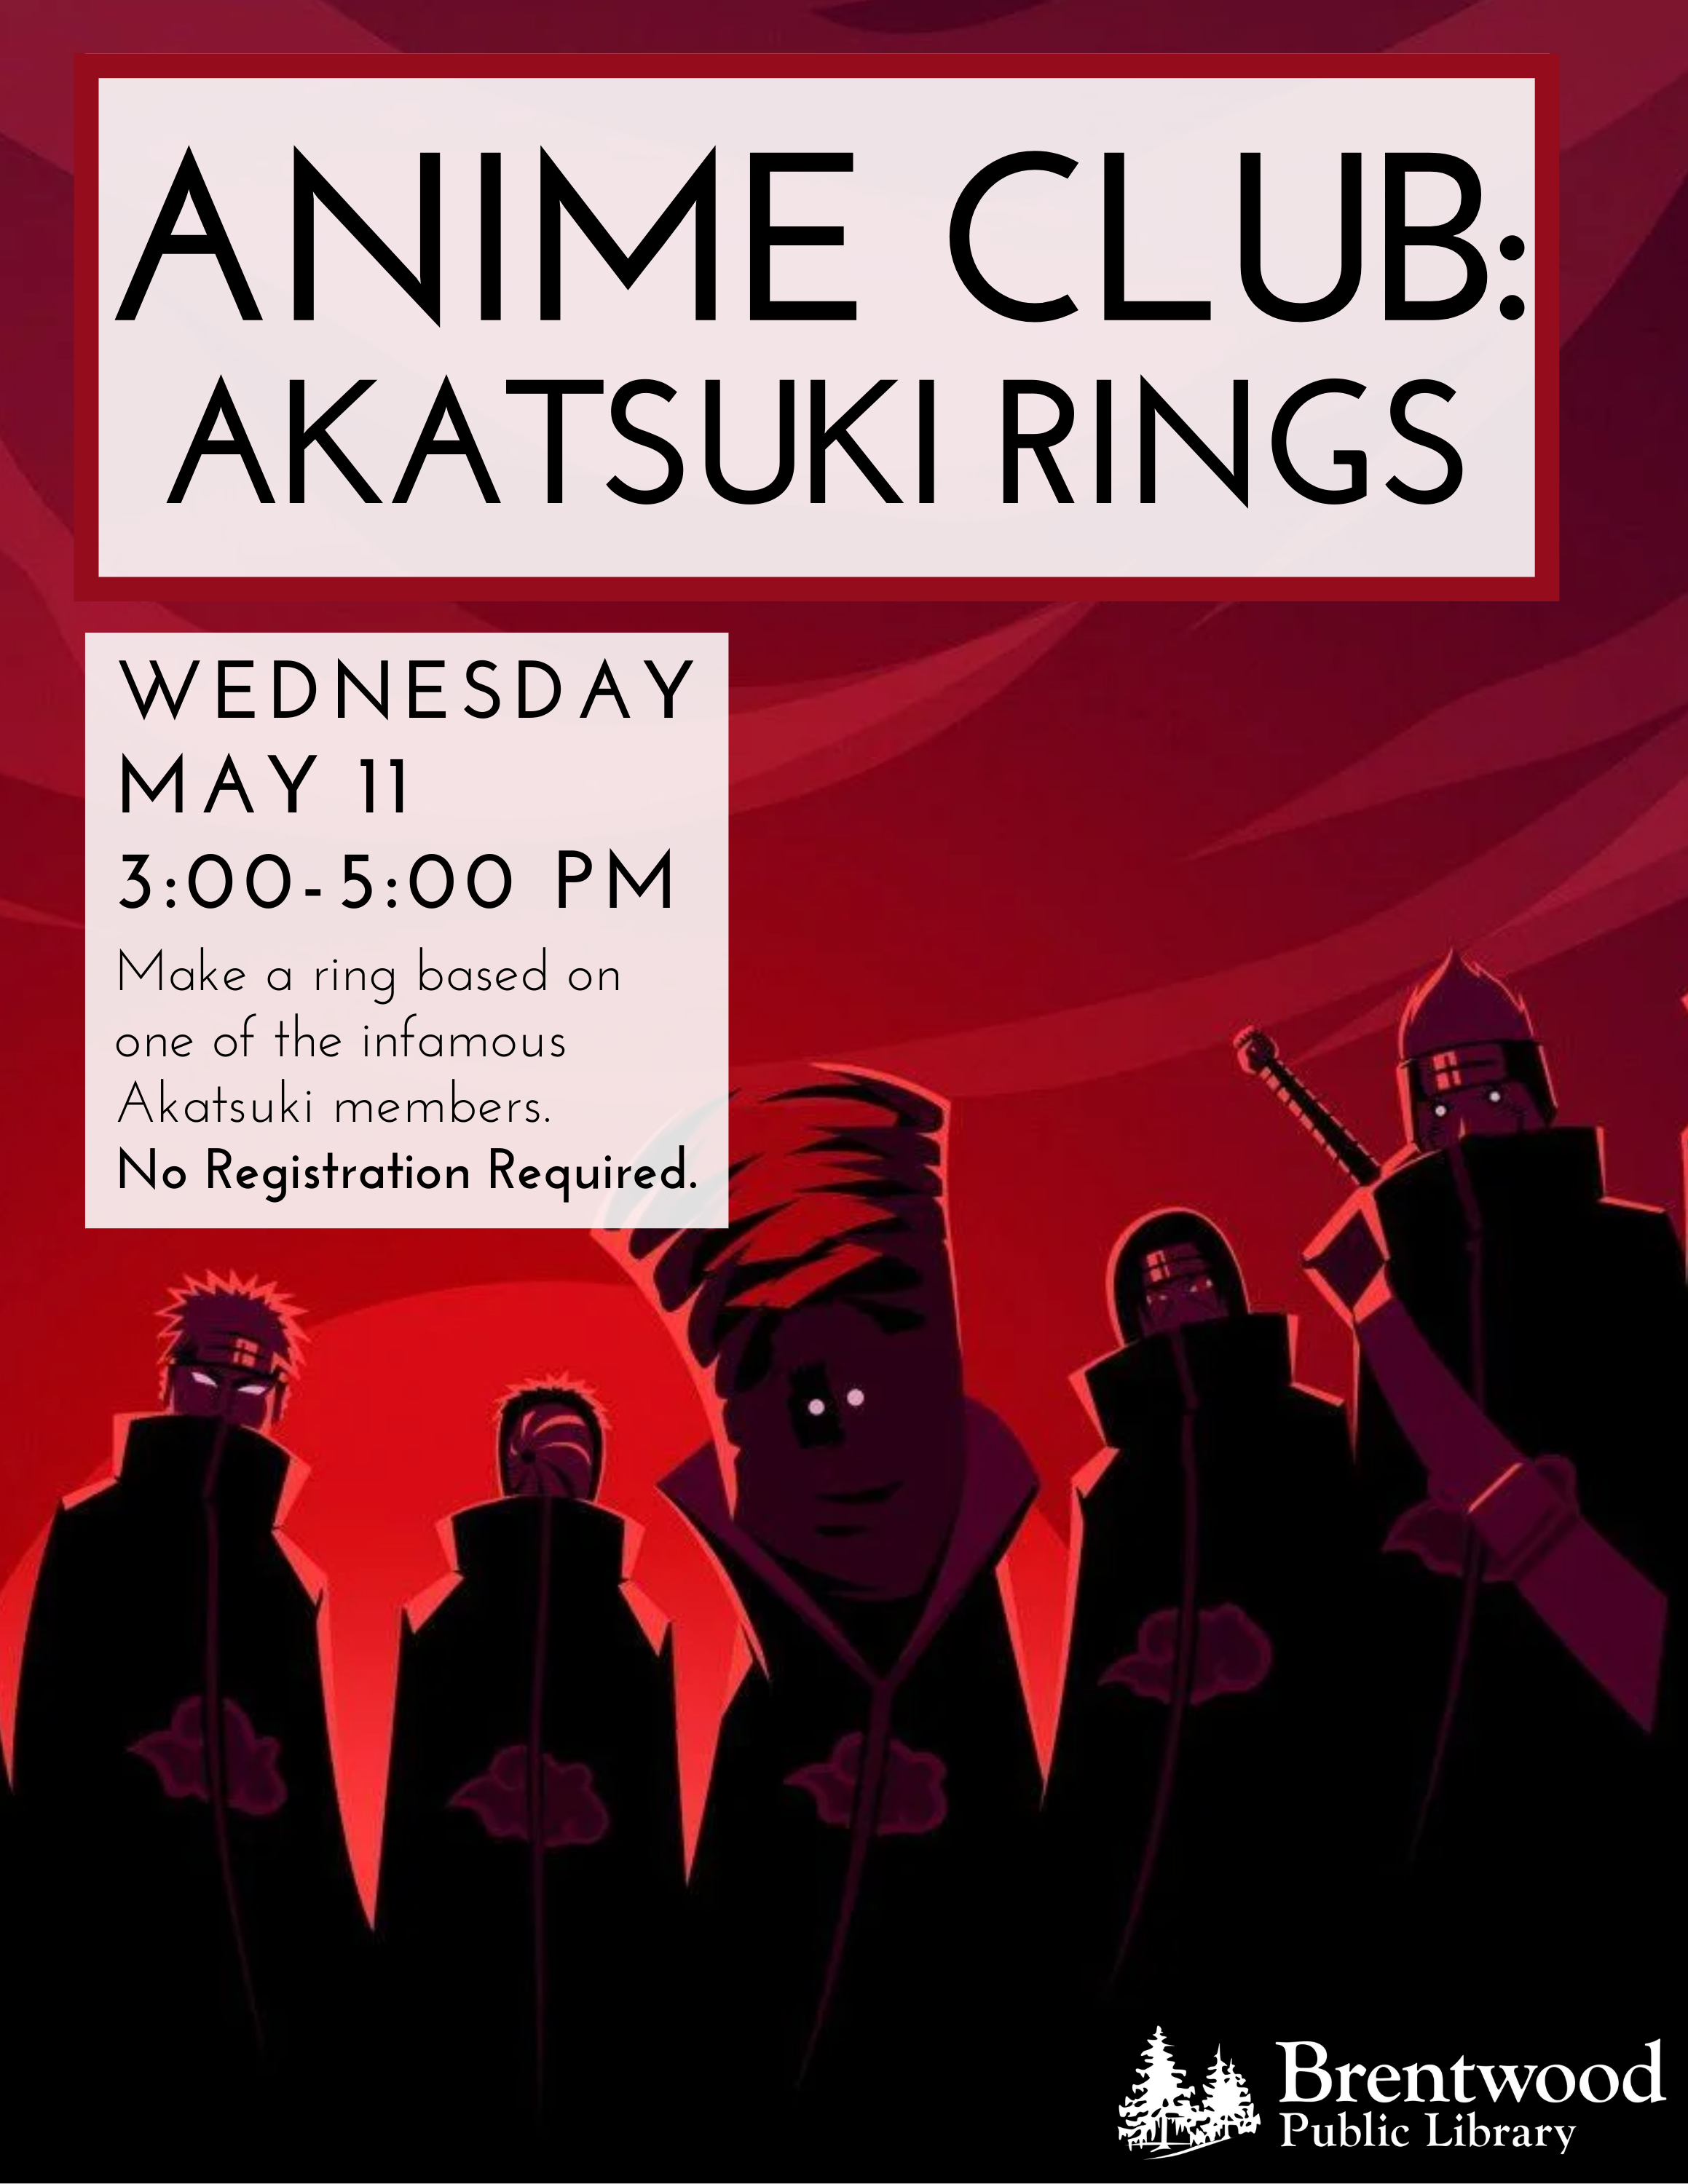 Anime Club Akatsuki Rings